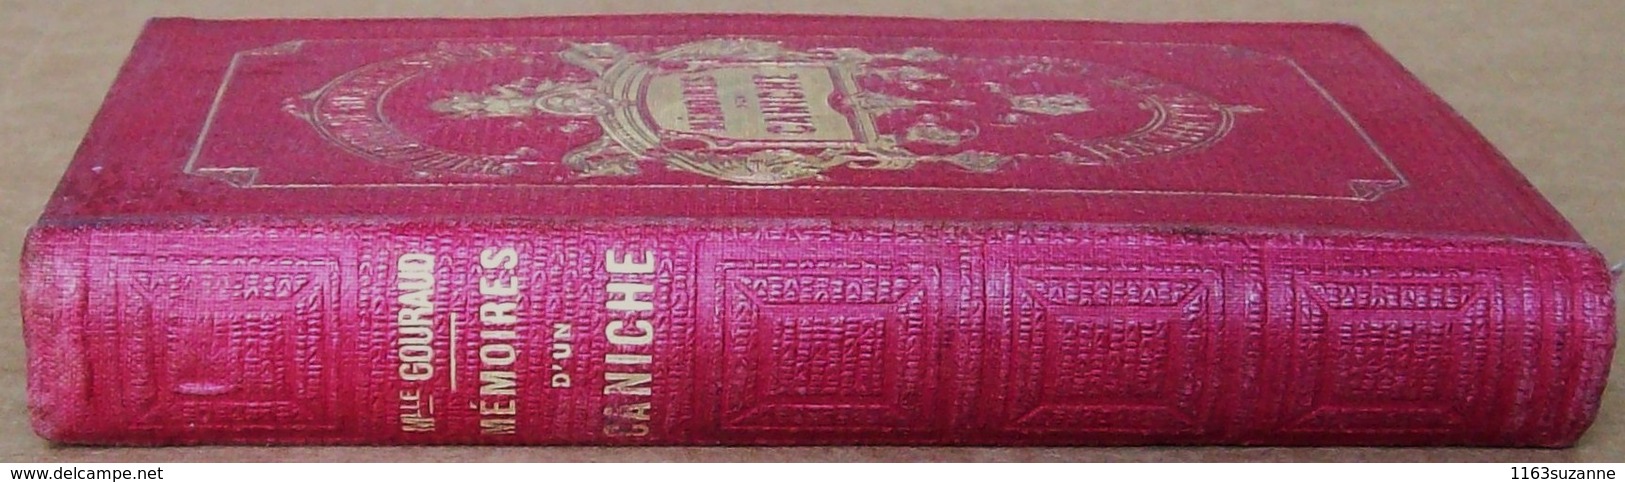 Hachette, 1905 > Mlle JULIE GOURAUD : Mémoires d'un caniche, illustré par EMILE BAYARD (Bibliothèque Rose Illustrée)